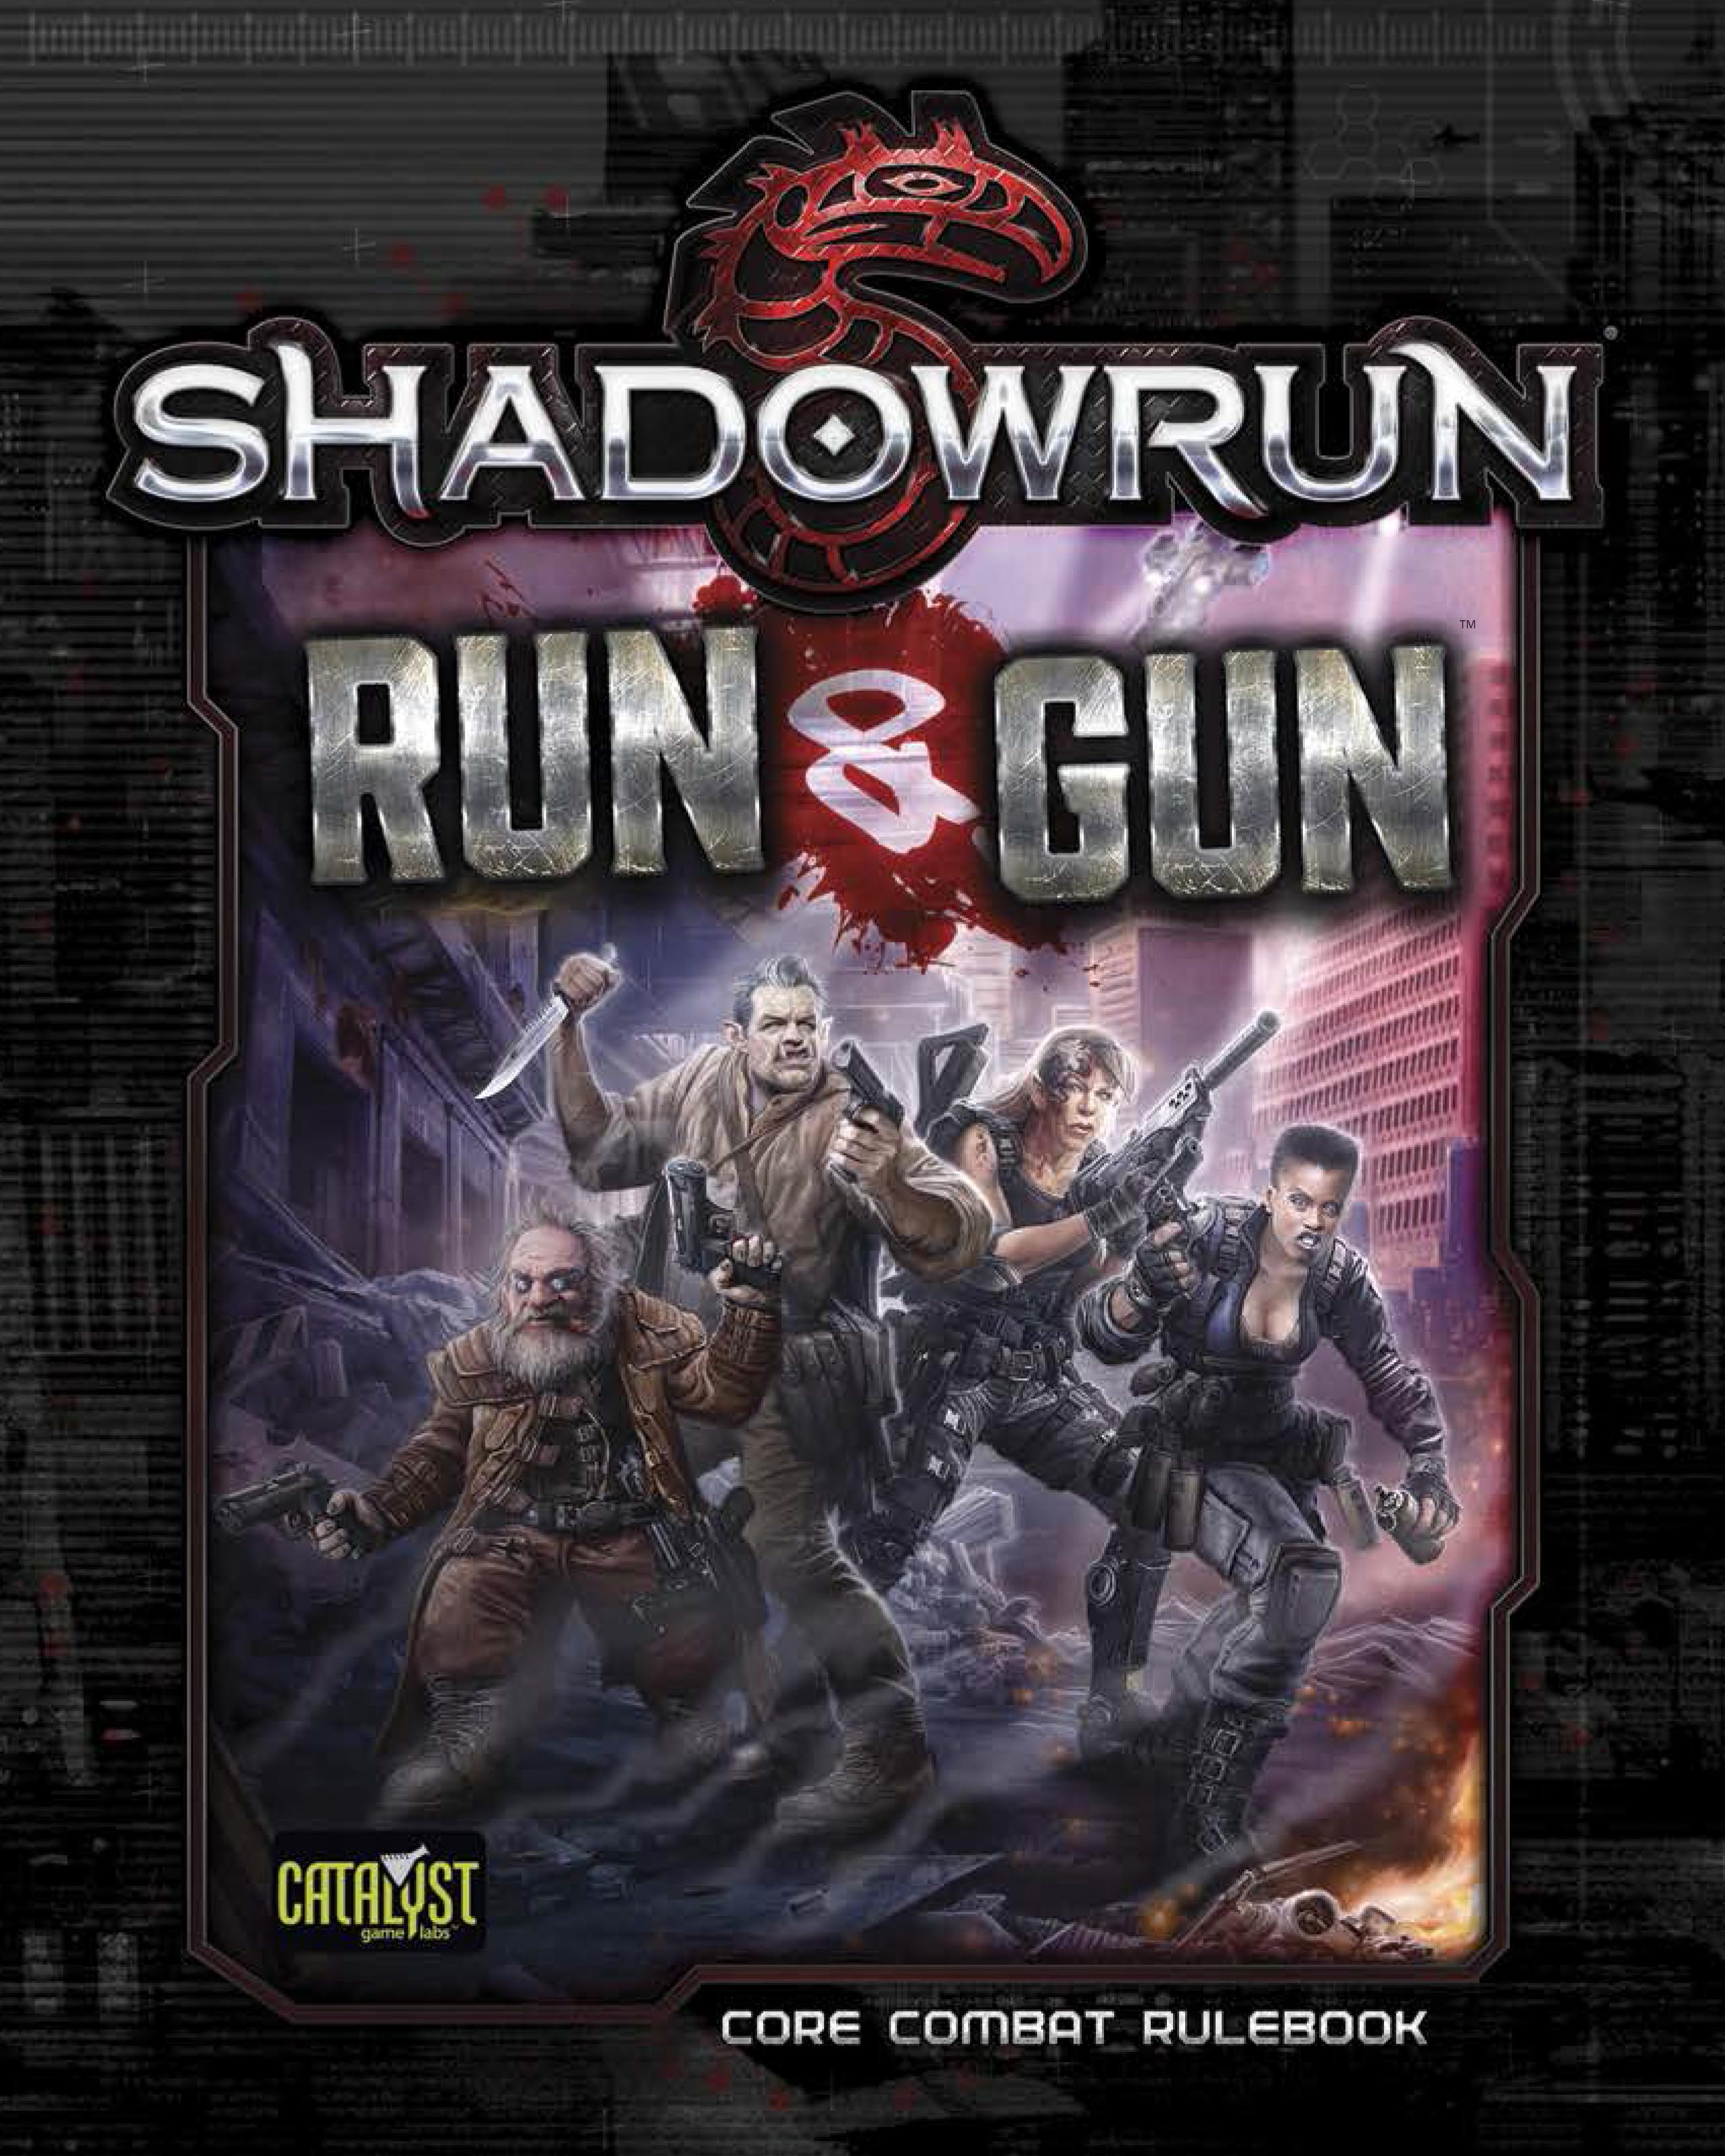 Shadowrun Sexto Mundo: Edição nacional está em financiamento coletivo! -  Joga o D20